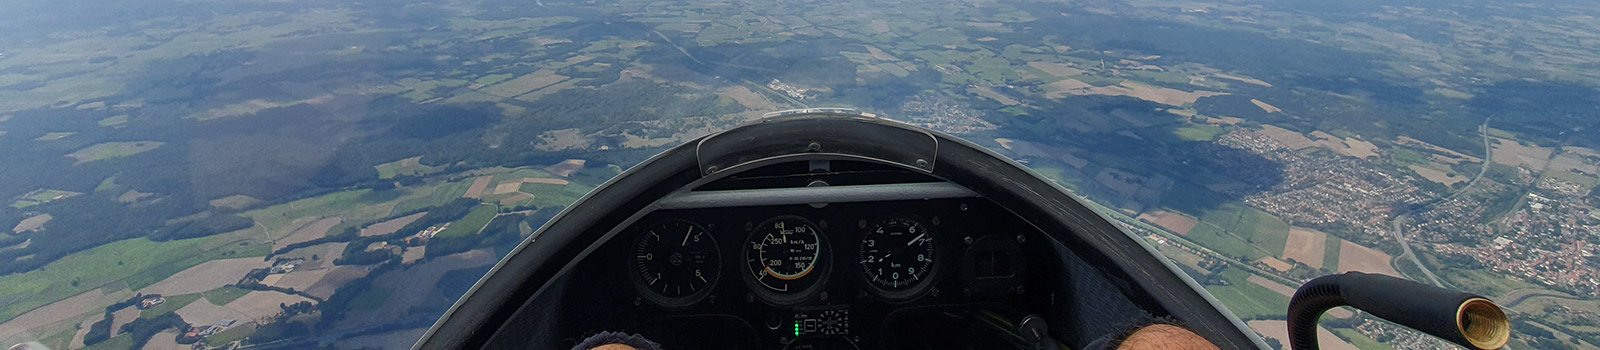 Rundflug über das Osnabrücker Land im Segelflugzeug